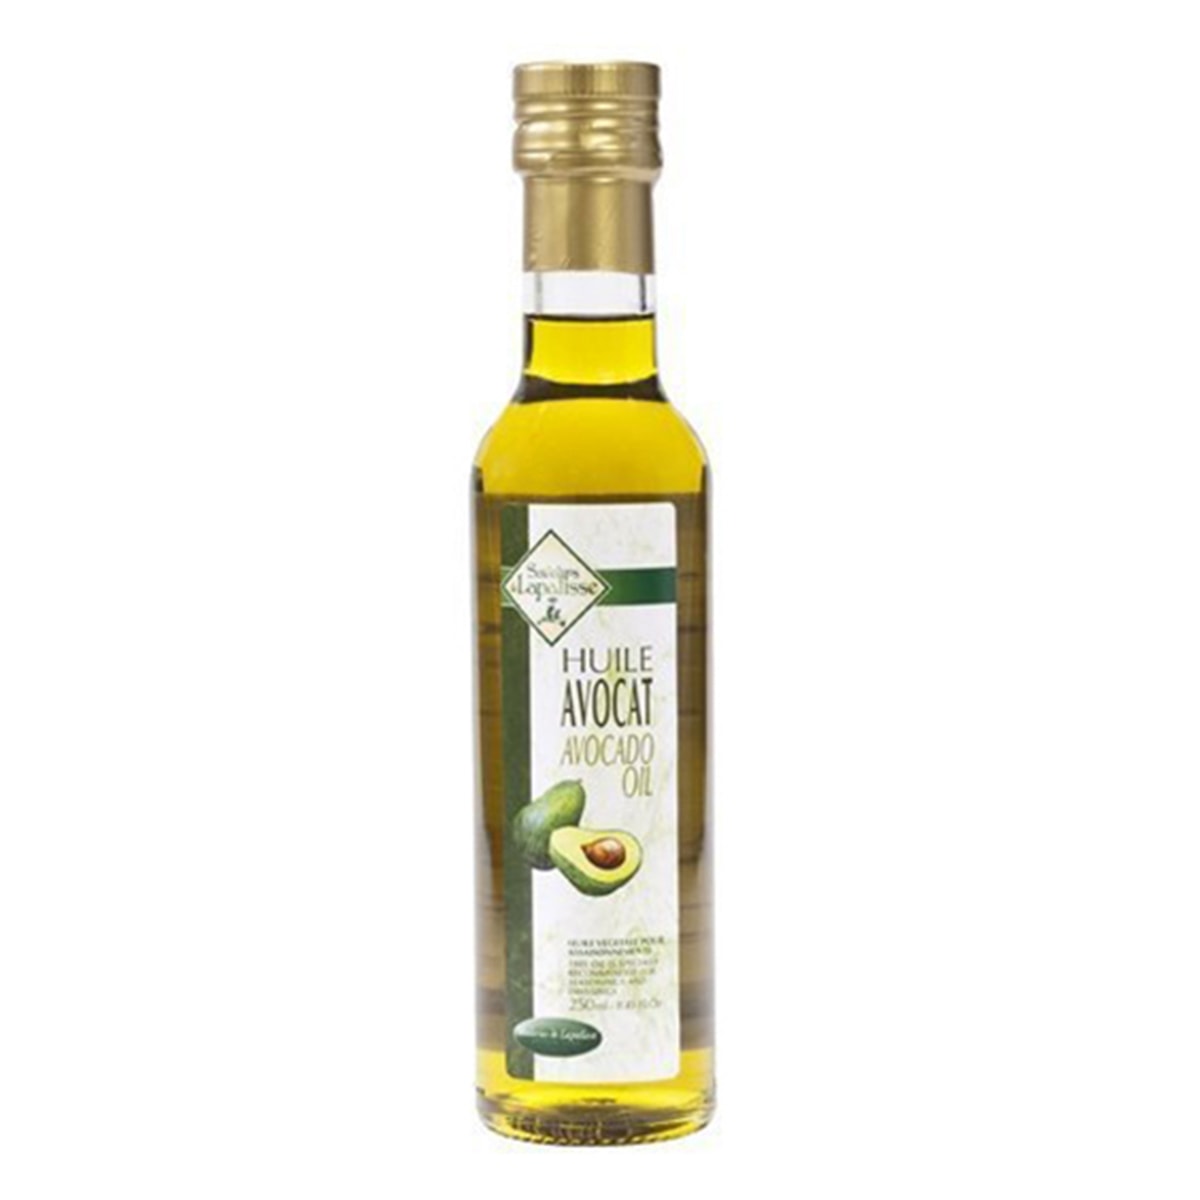 Buy Saveurs De Lapalisse Huile De Avocat (100% Pure Avocado Oil) - 250 ml